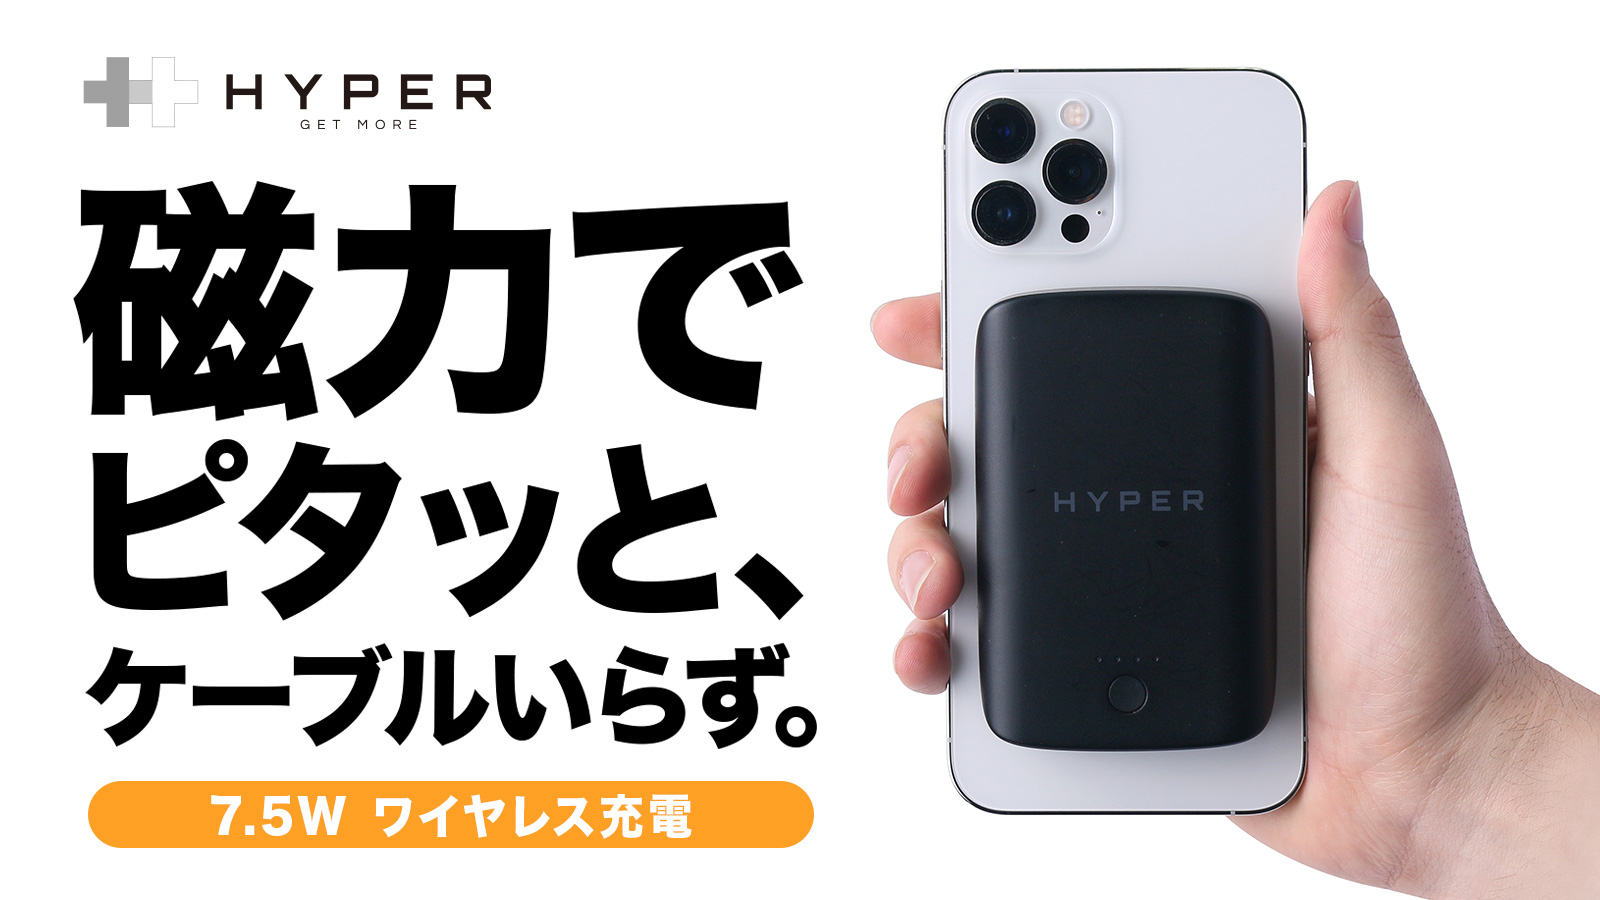 Hyper、Magsafe対応iPhoneにピタッと7.5W急速充電、マグネット